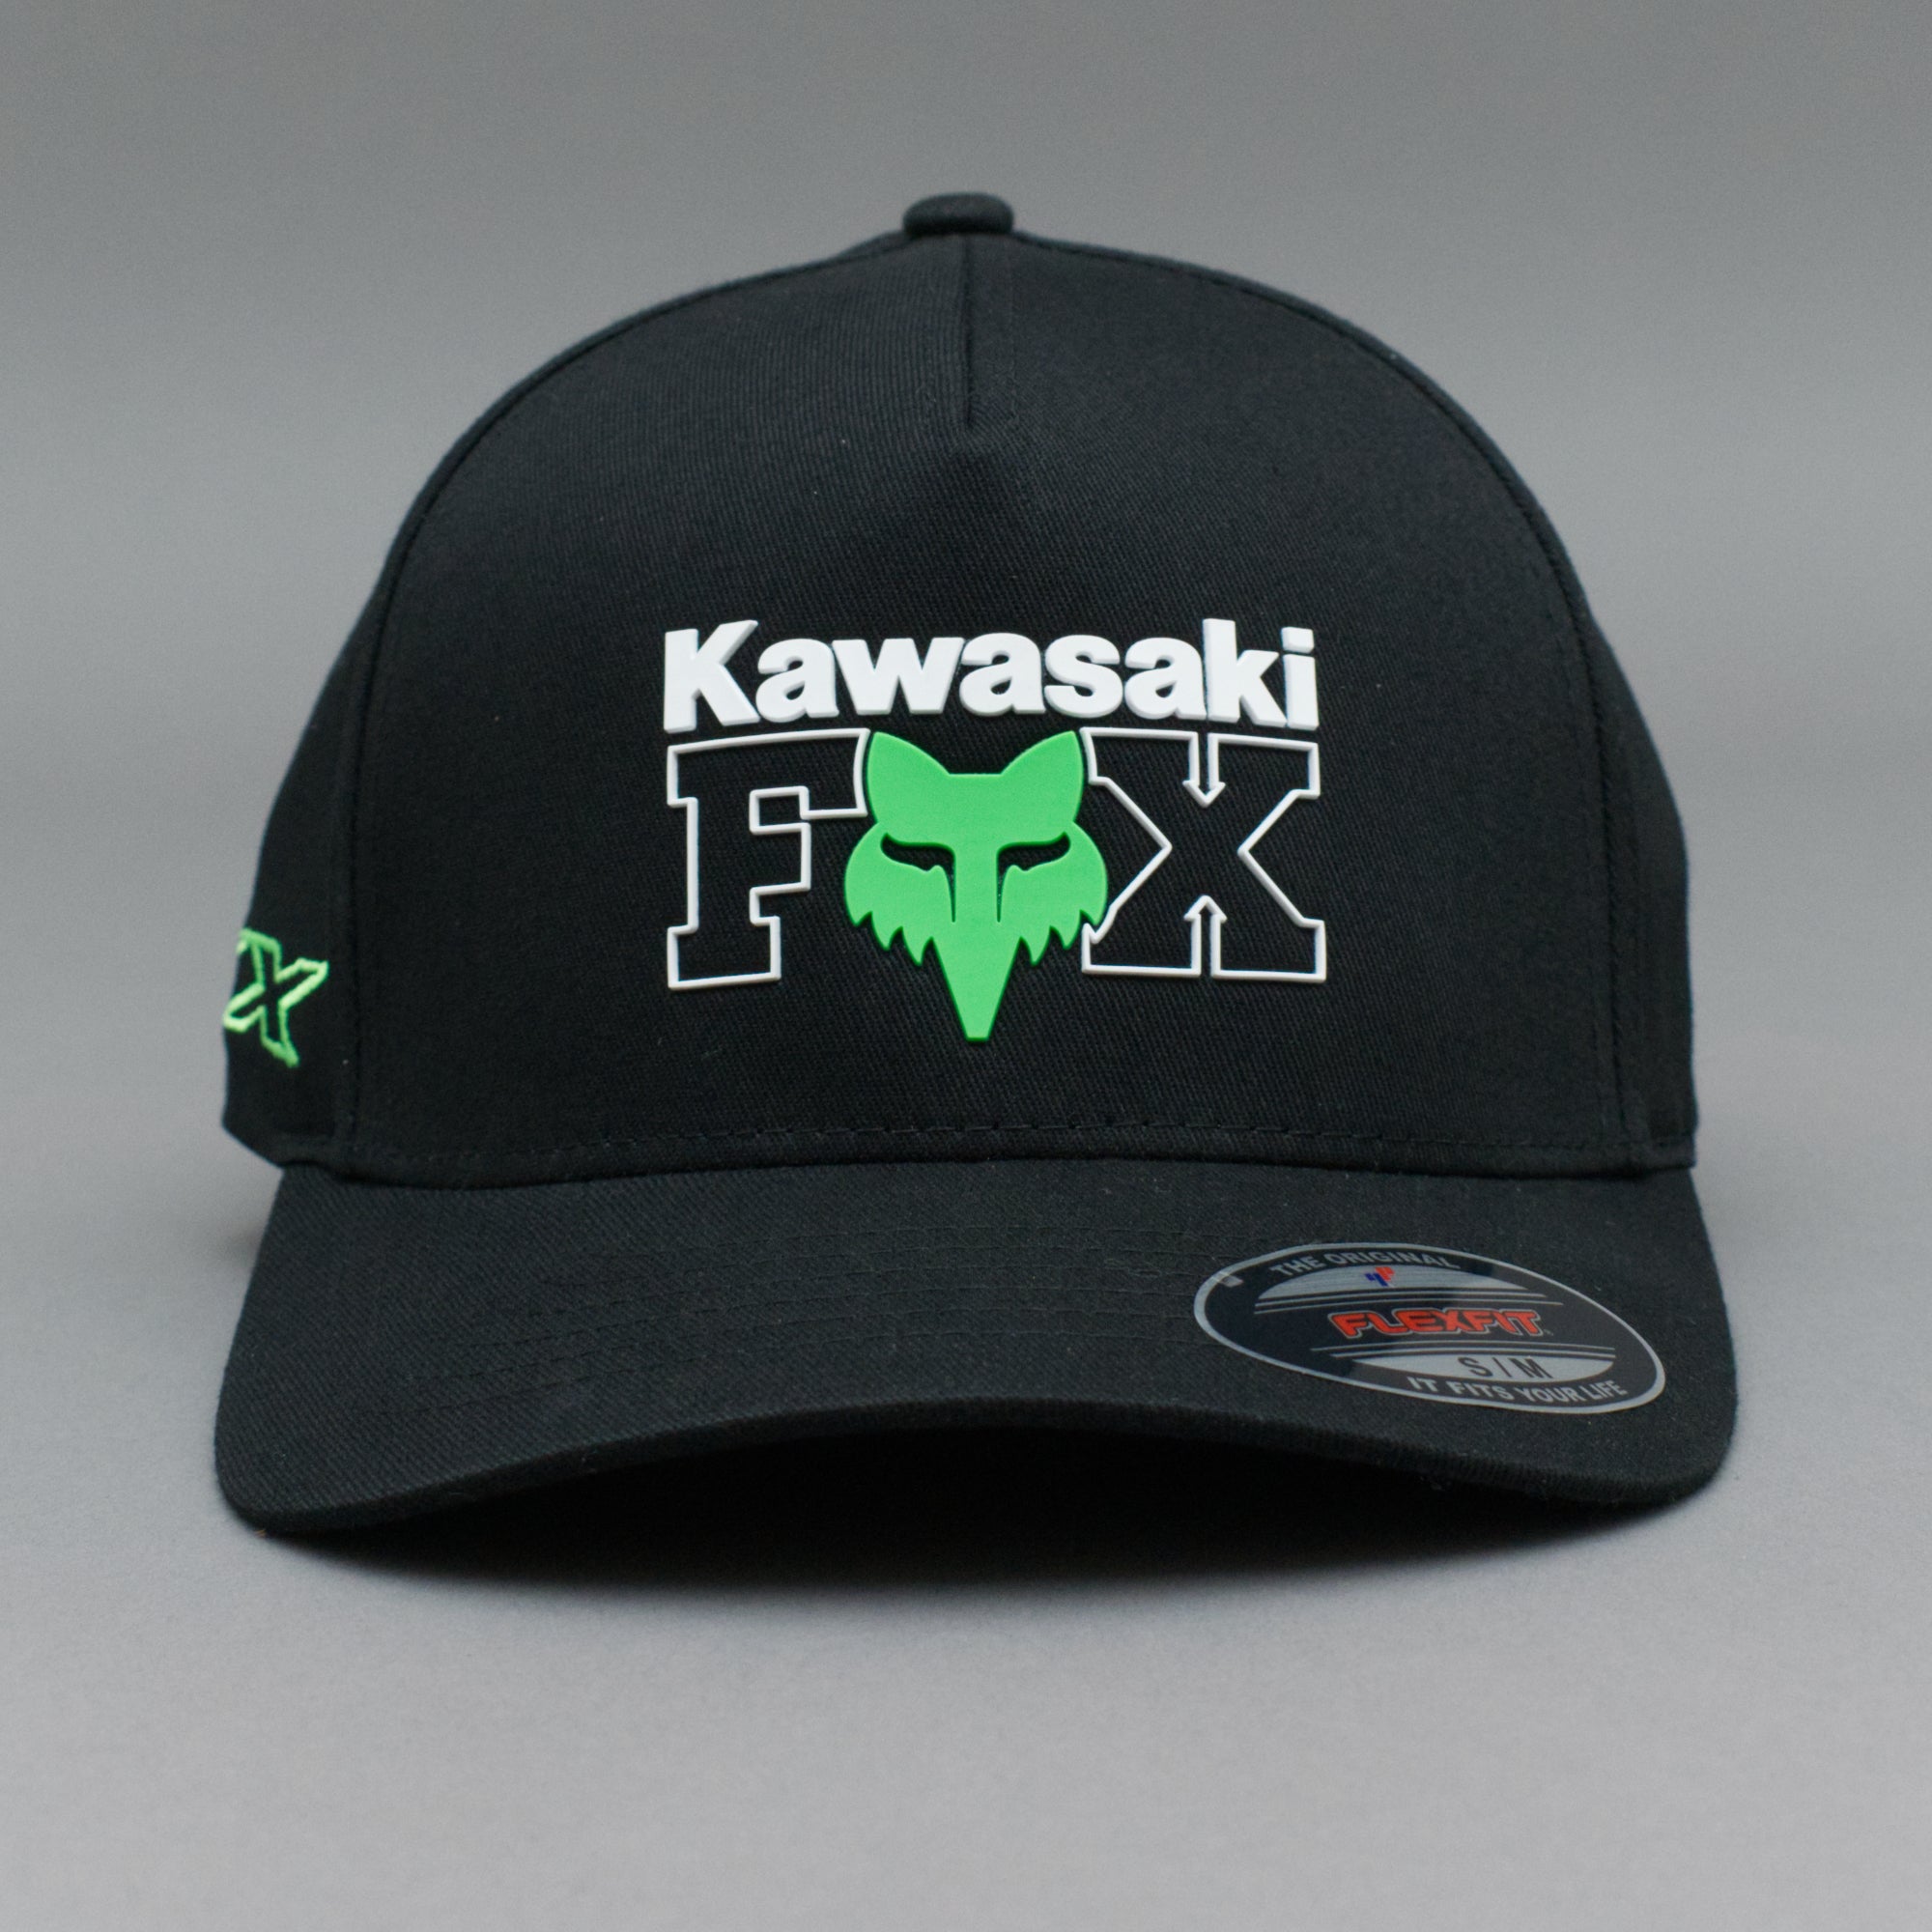 Fox Kawasaki Flexfit Black Sort 30636-001